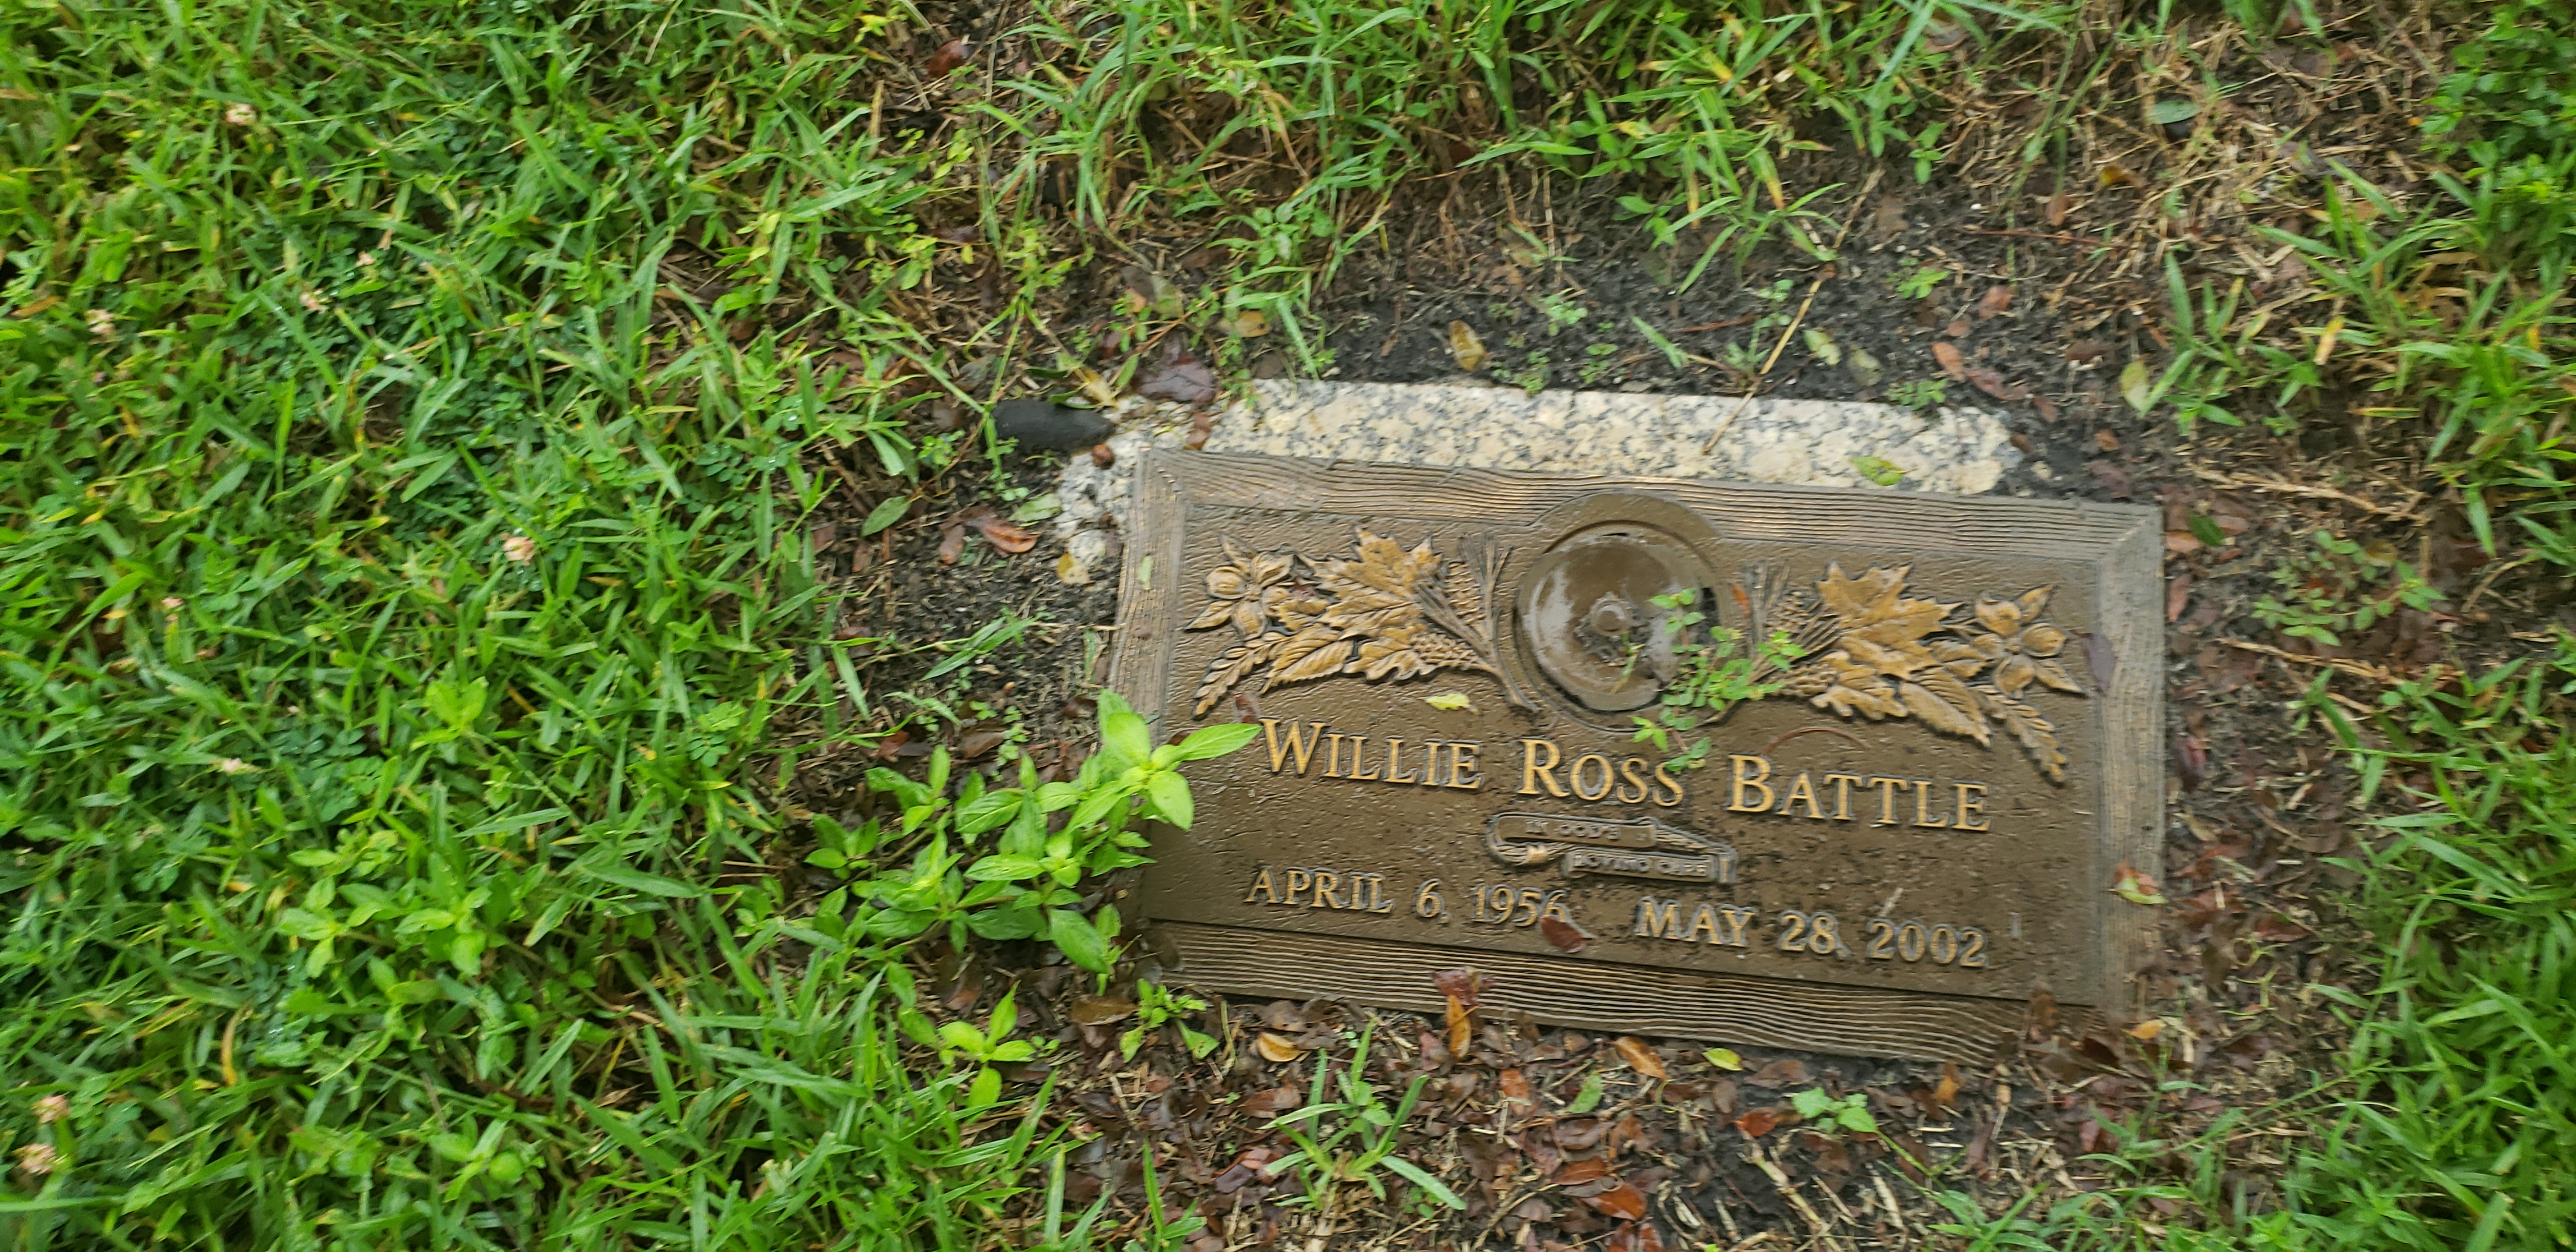 Willie Ross Battle